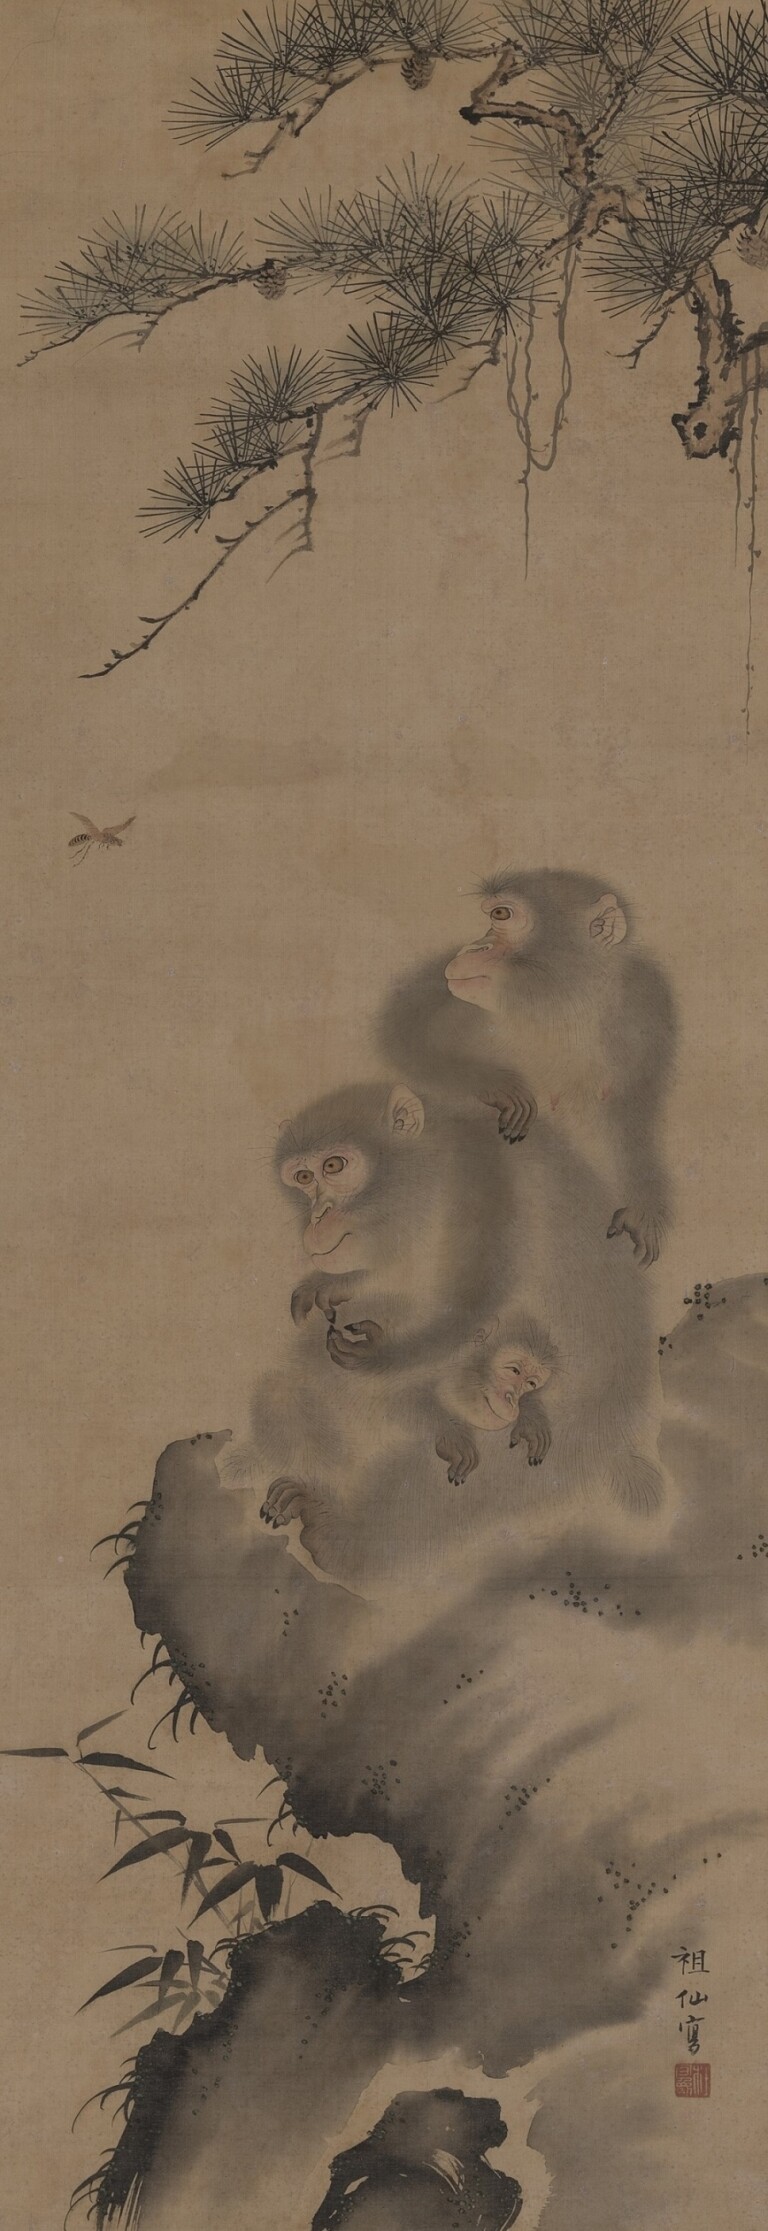 Mori Sosen, Famiglia di scimmie, fine del XVIII sec., dipinto a inchiostro e colori su seta, 108 x 37,9 cm